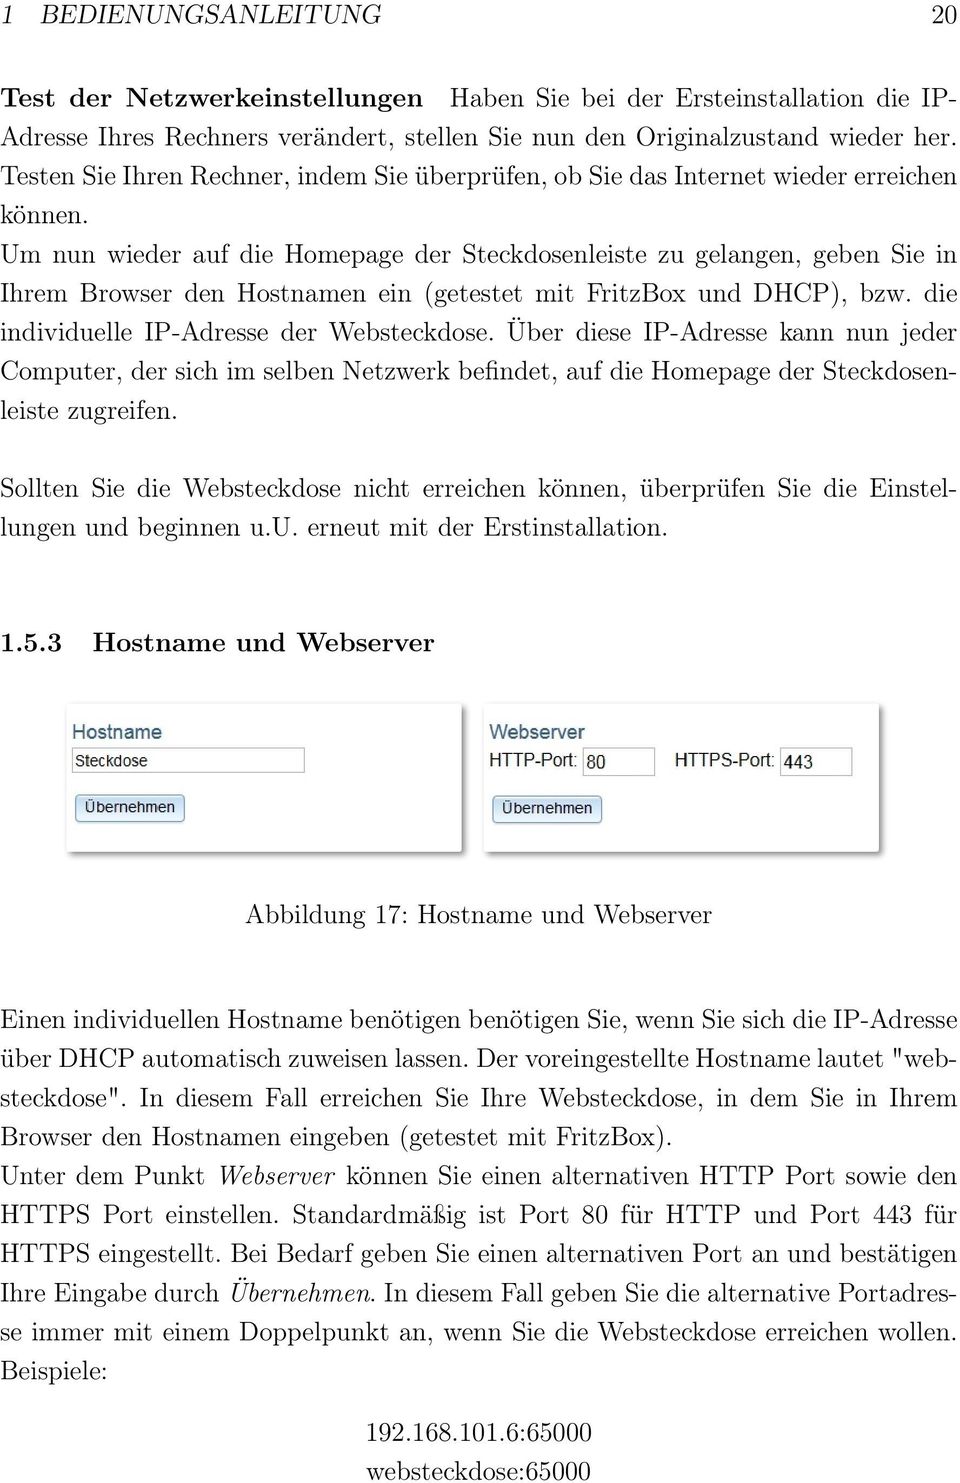 Um nun wieder auf die Homepage der Steckdosenleiste zu gelangen, geben Sie in Ihrem Browser den Hostnamen ein (getestet mit FritzBox und DHCP), bzw. die individuelle IP-Adresse der Websteckdose.